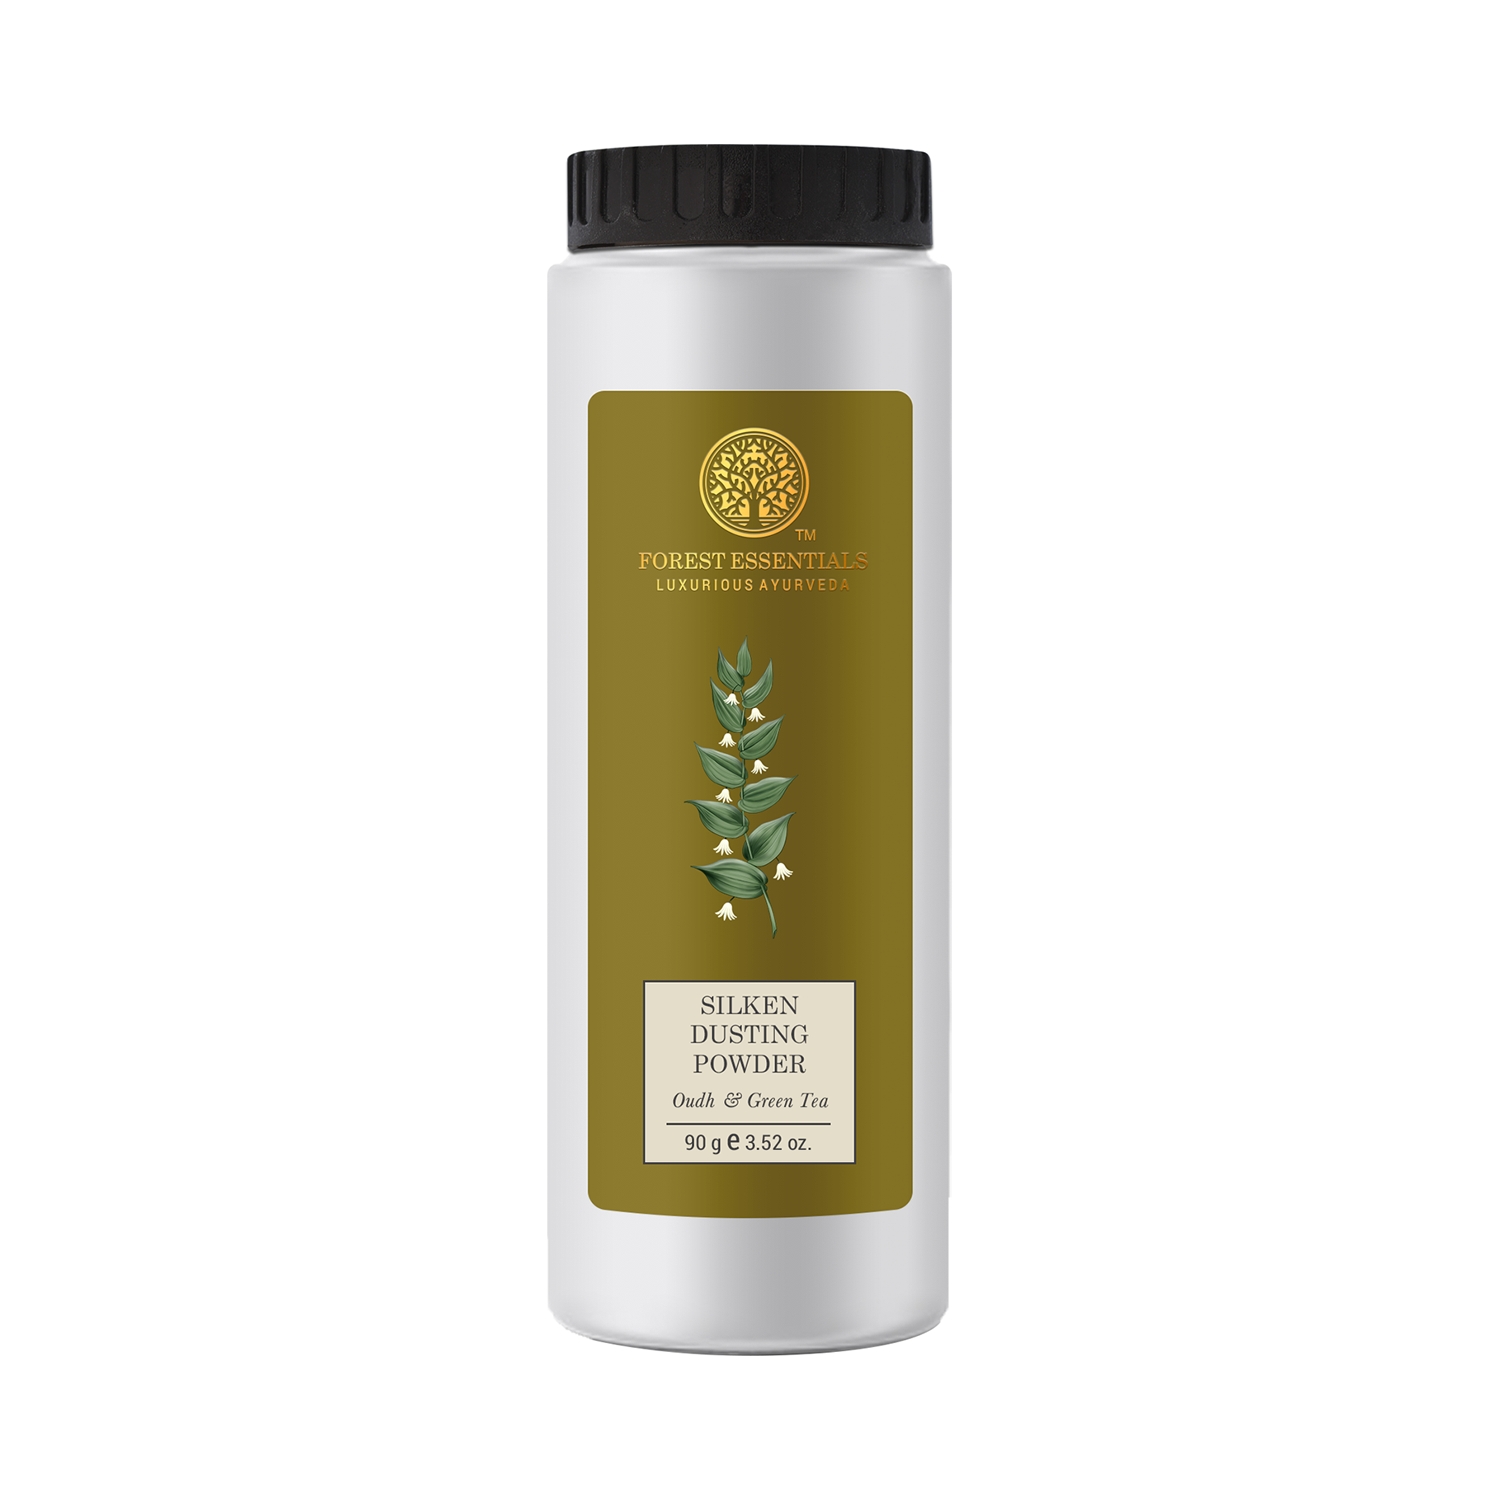 Forest Essentials | Forest Essentials Oudh & Green Tea Silken Dusting Powder (90g)